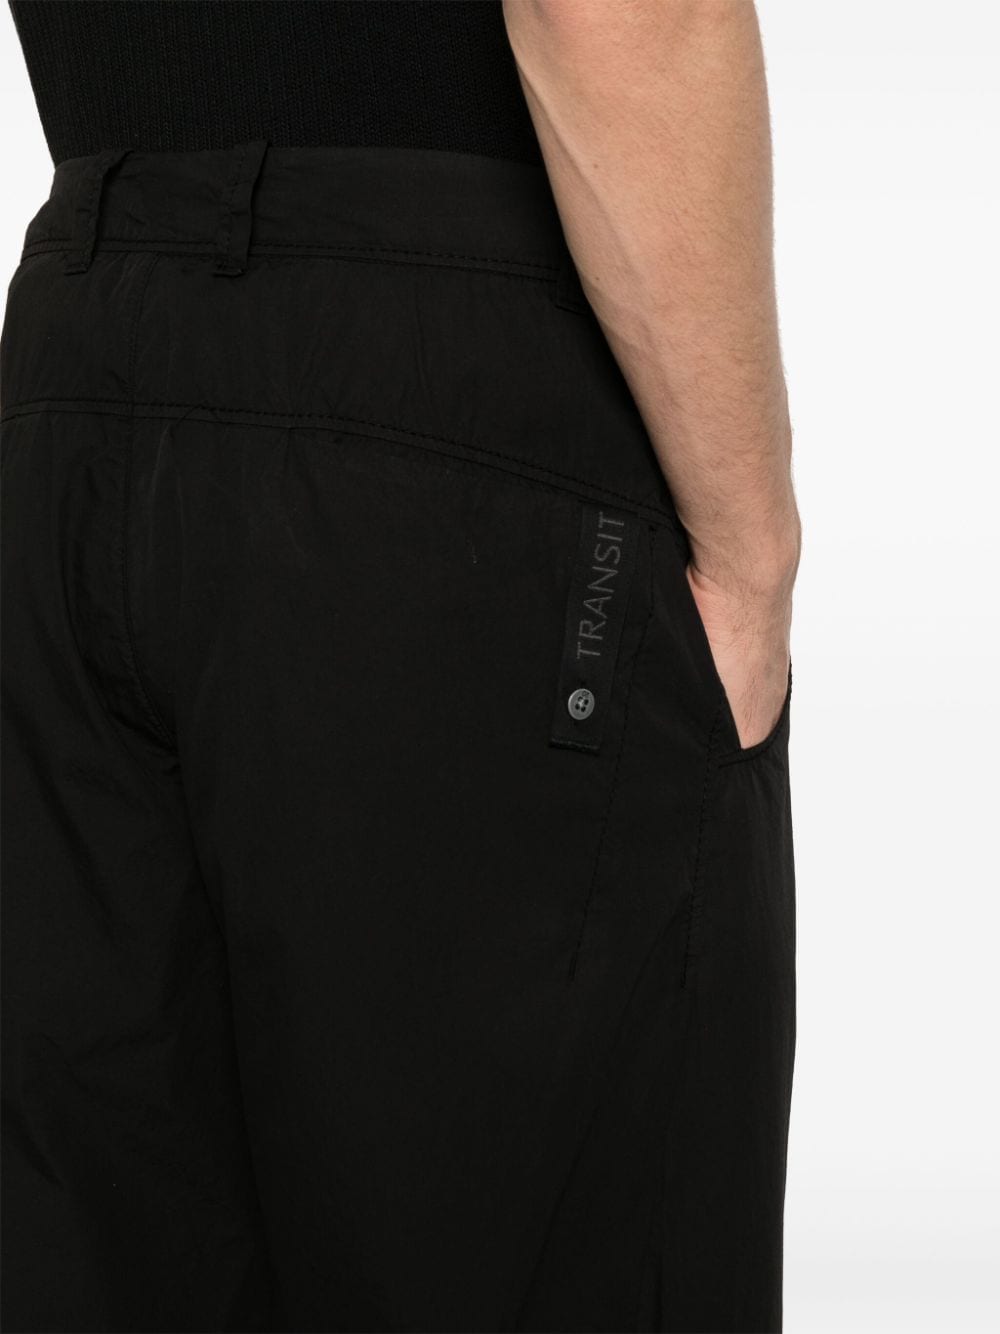 Black poplin trousers